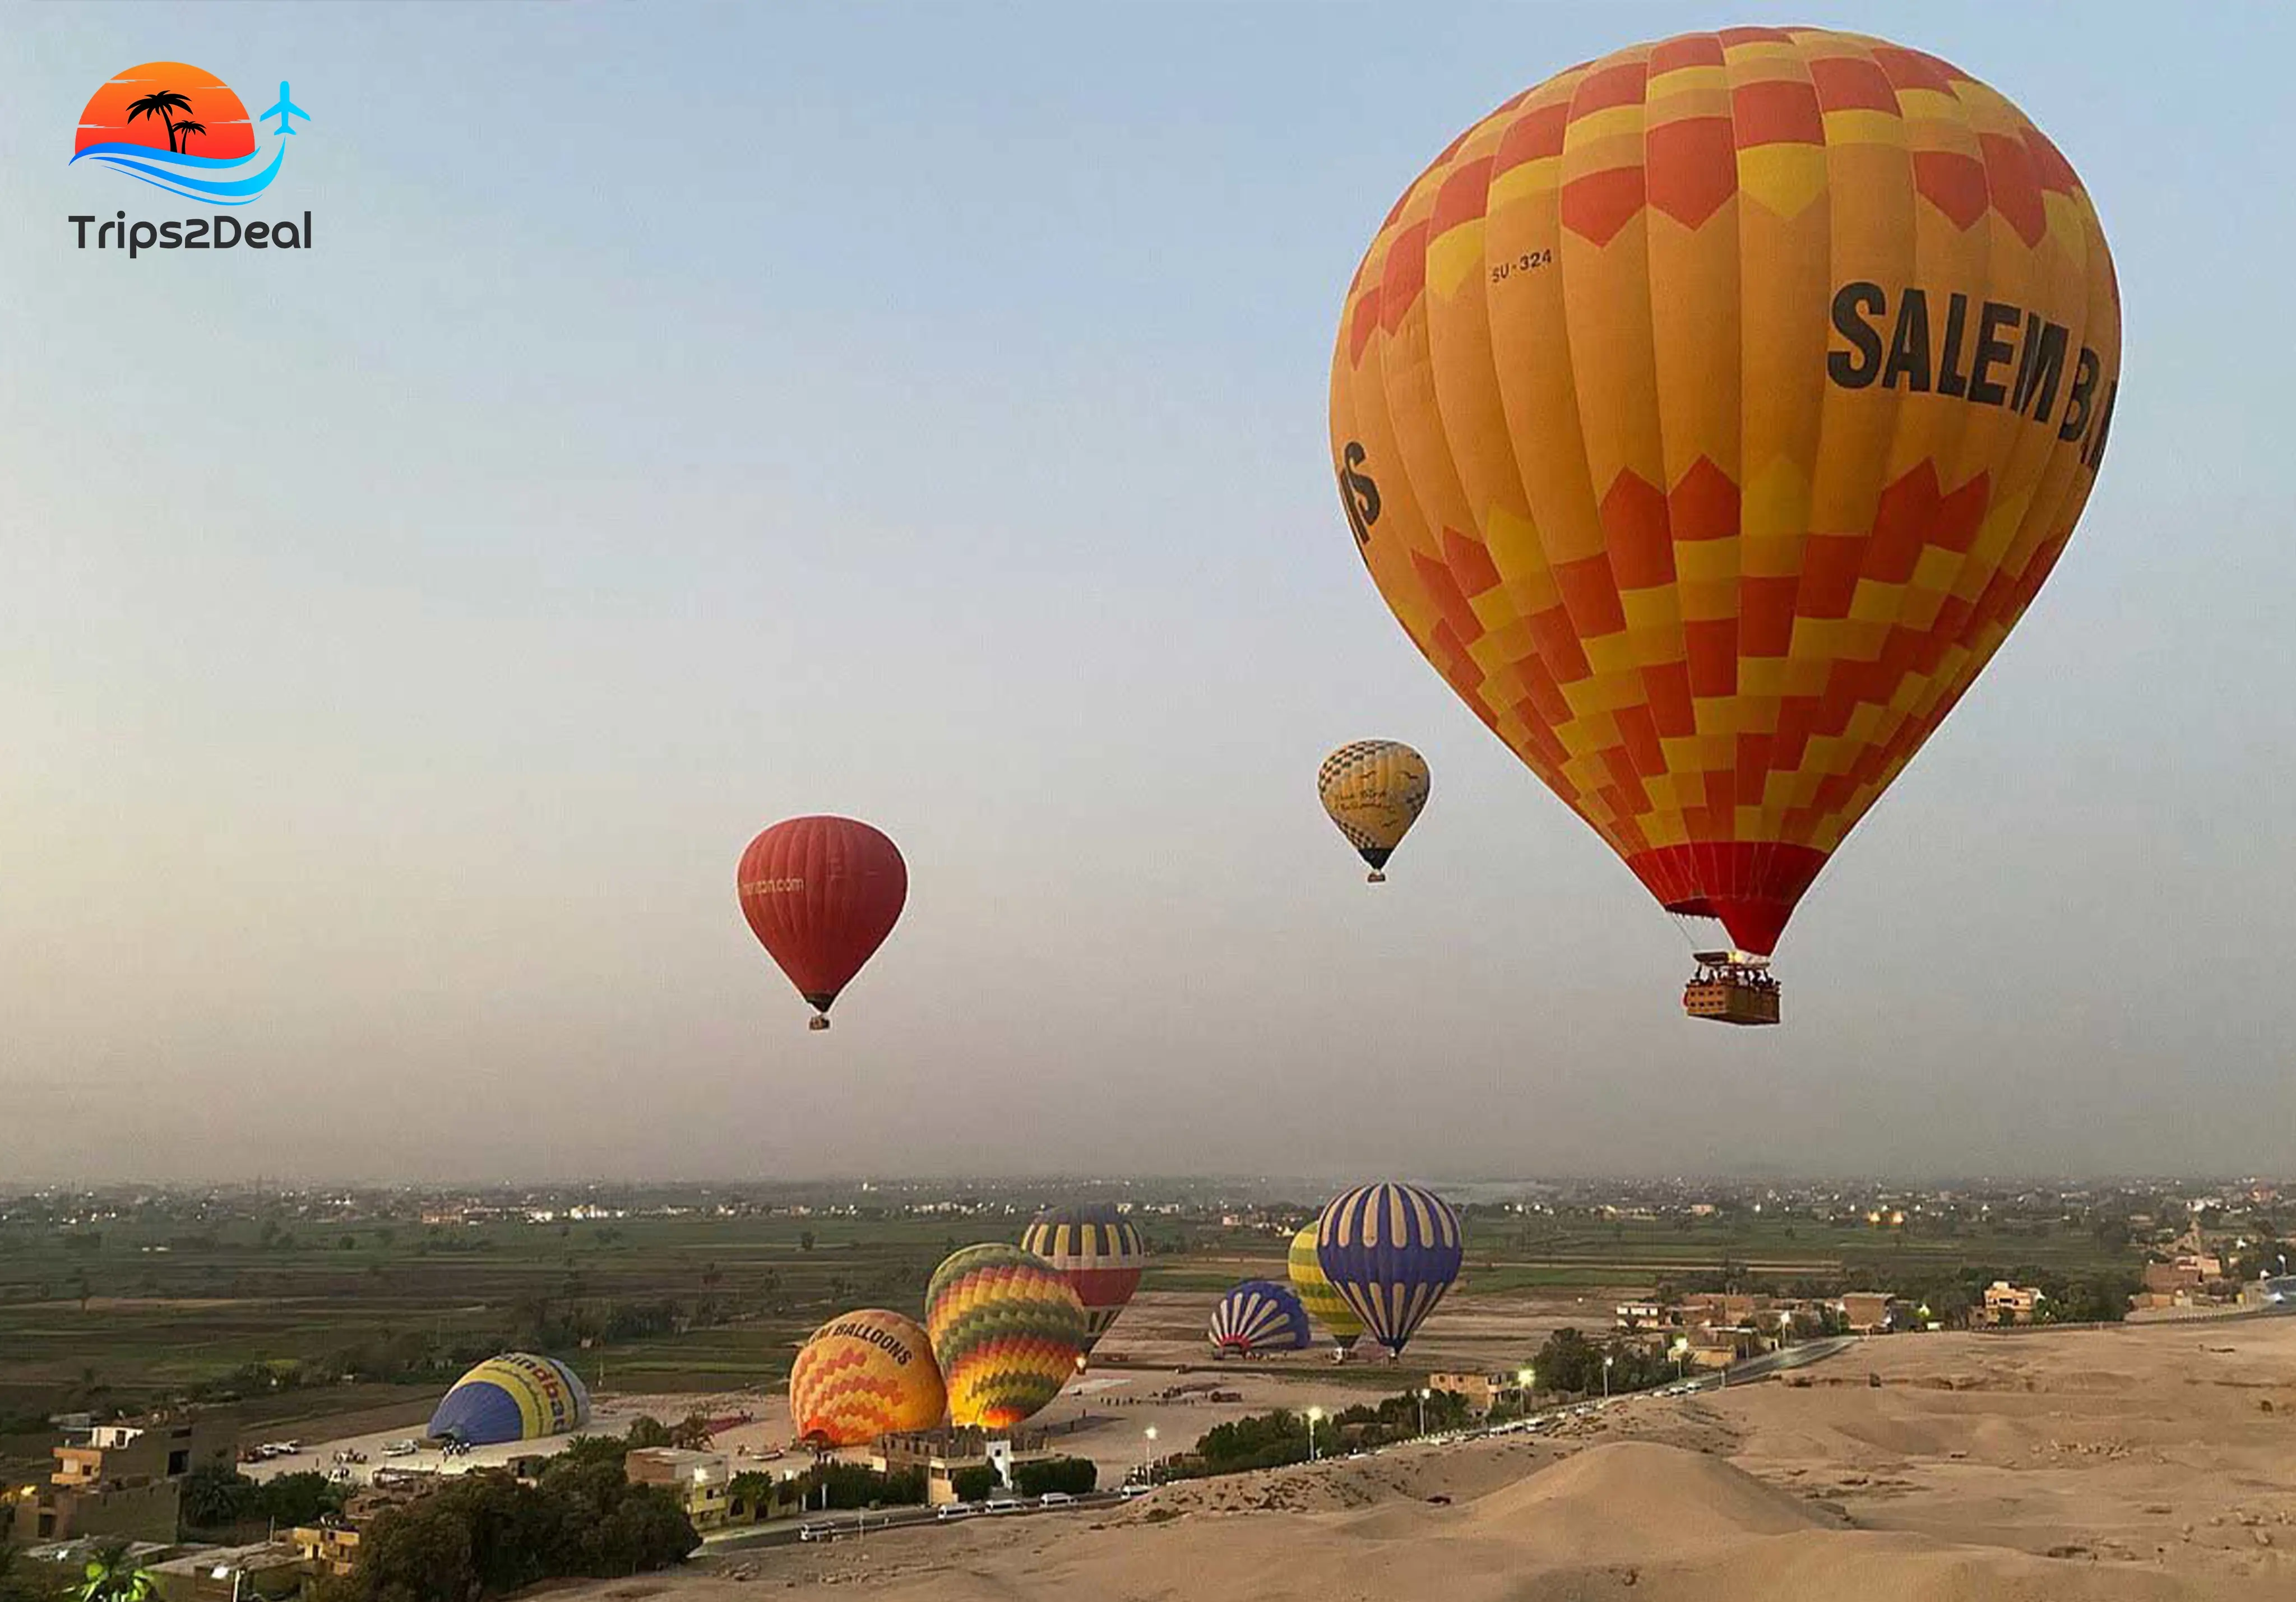 A hot air balloon ride in Luxor